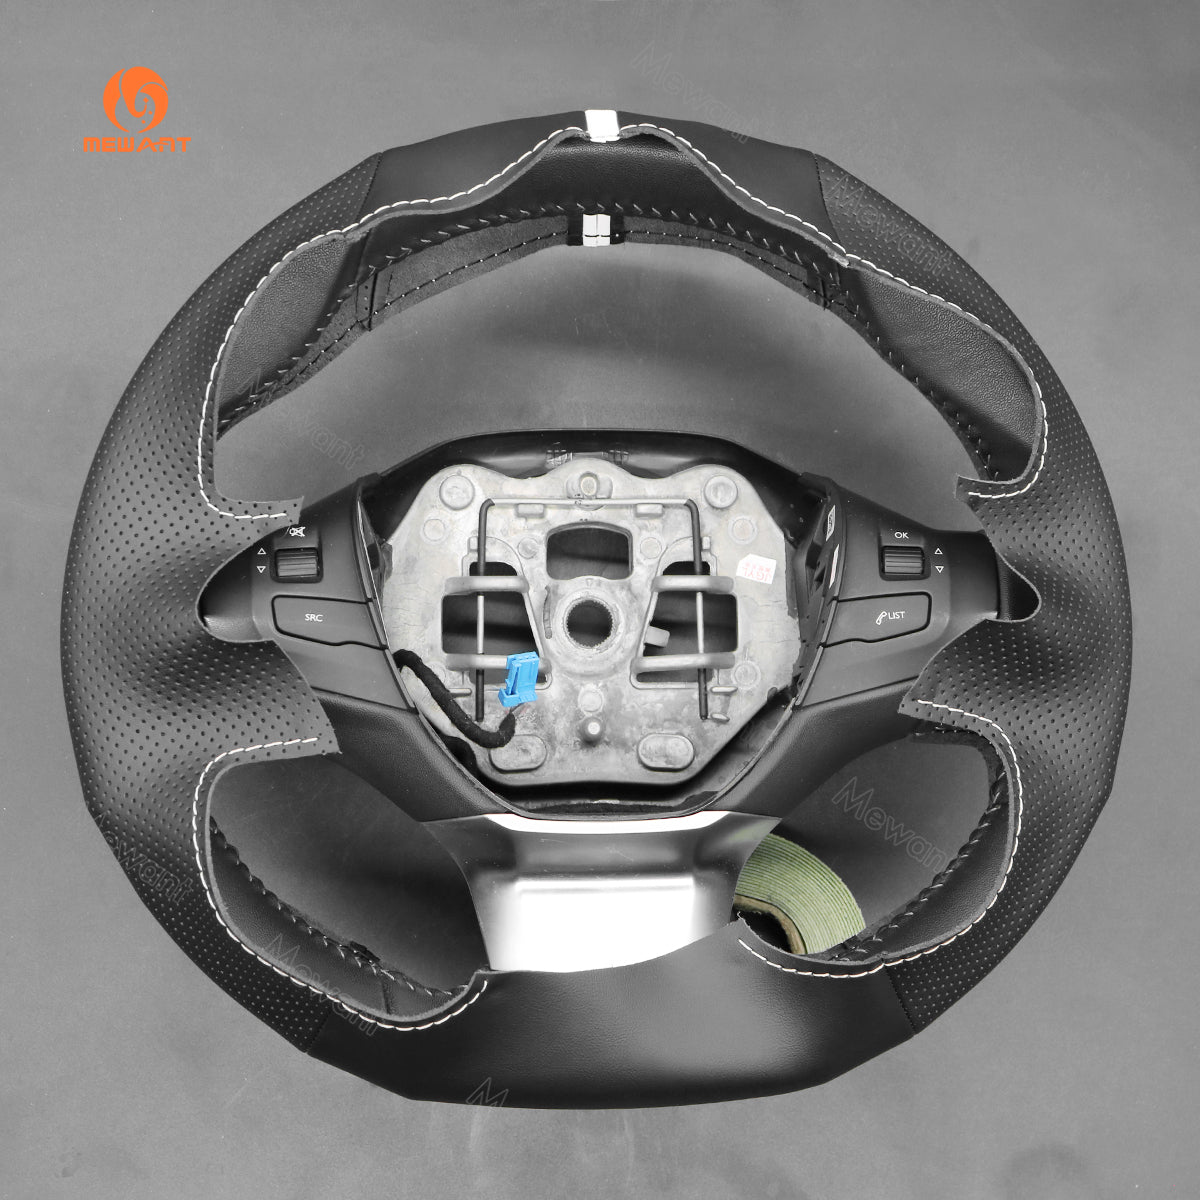 MEWANT Hand Stitch Car Steering Wheel Cover for Toyota Yaris Vitz Probox Sienta Succeed Echo Porte